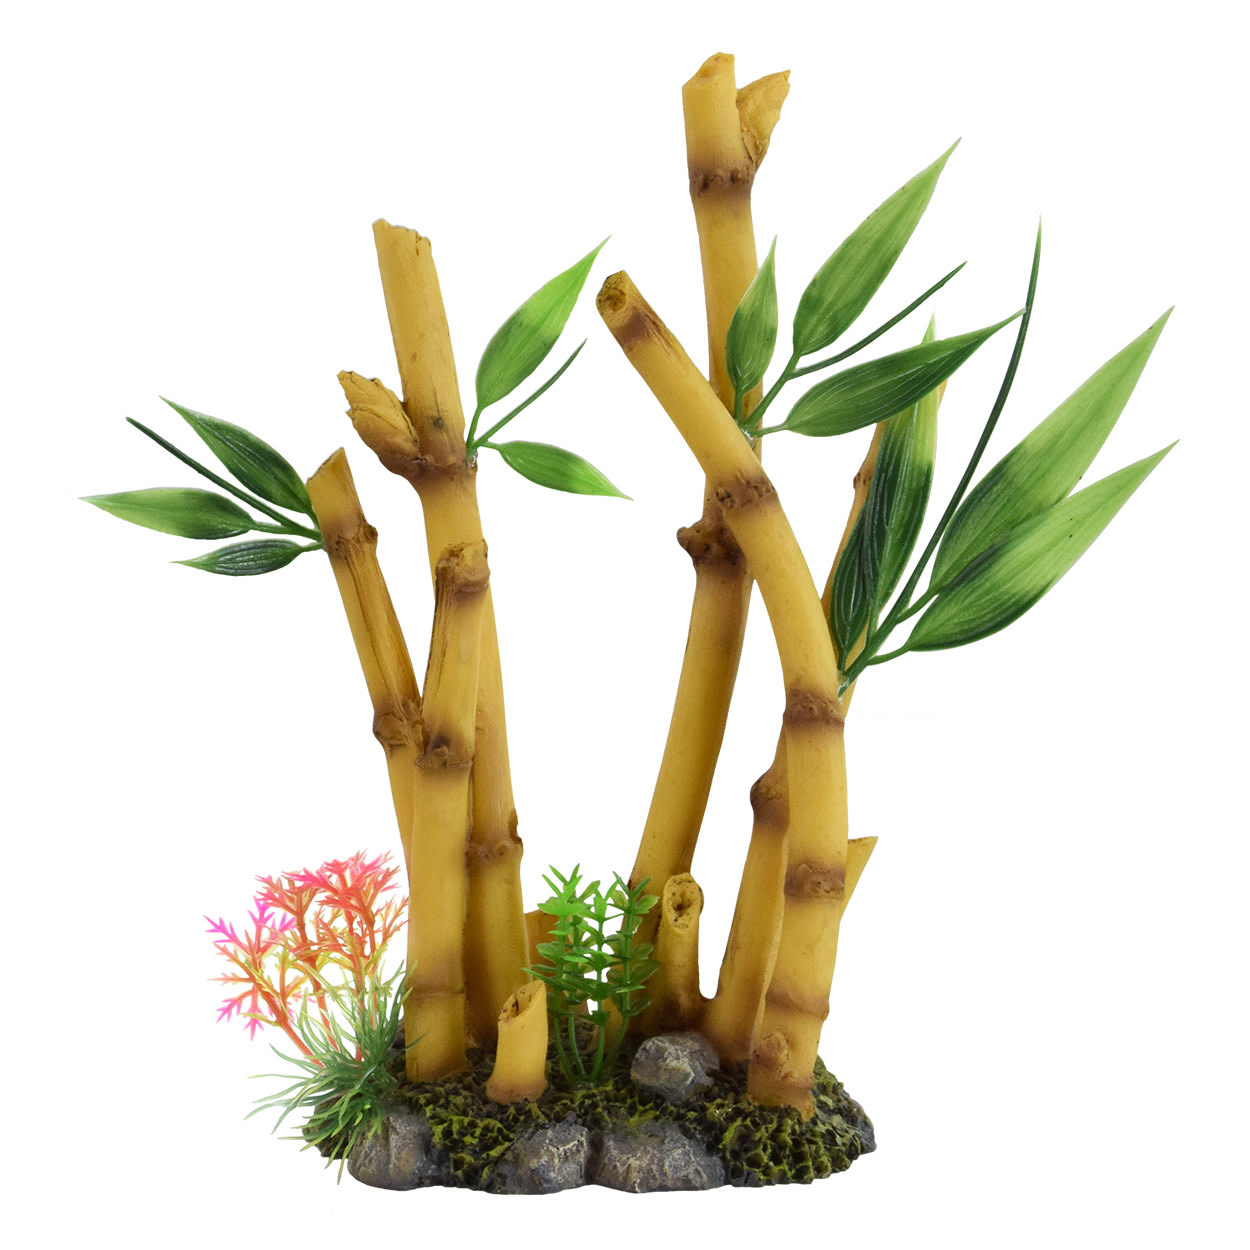 Underwater Bamboo